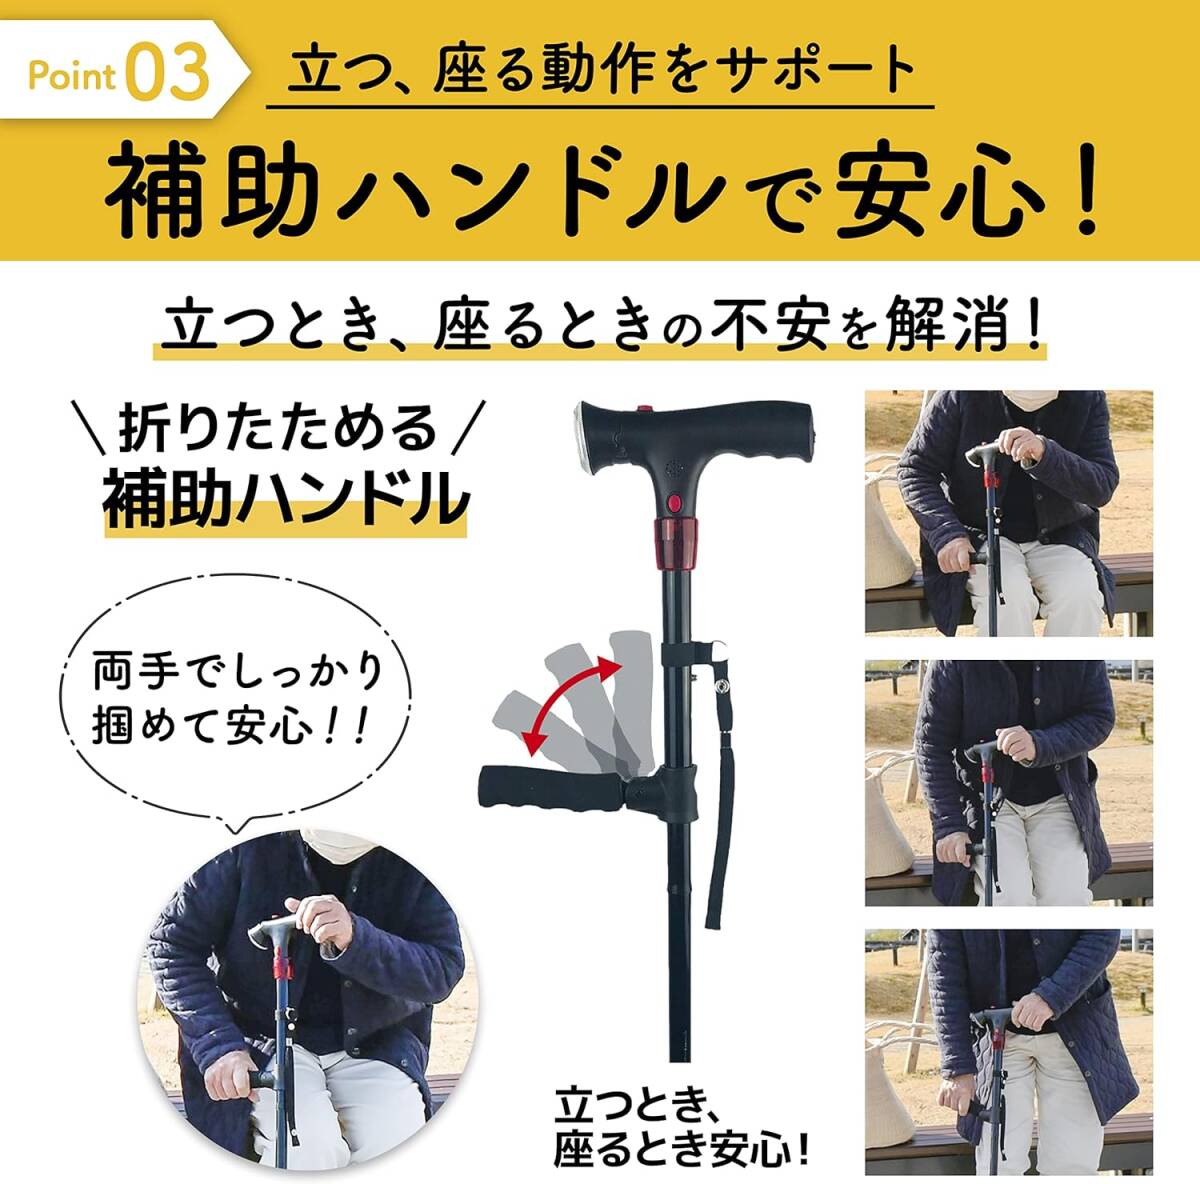  многофункциональный трость [ Kyoto ..yama солнечный ] многофункциональный трость 4шт.@ пара складной трость трость [ для мужчин и женщин высота 76~87cm( рост стандарт 148~170cm